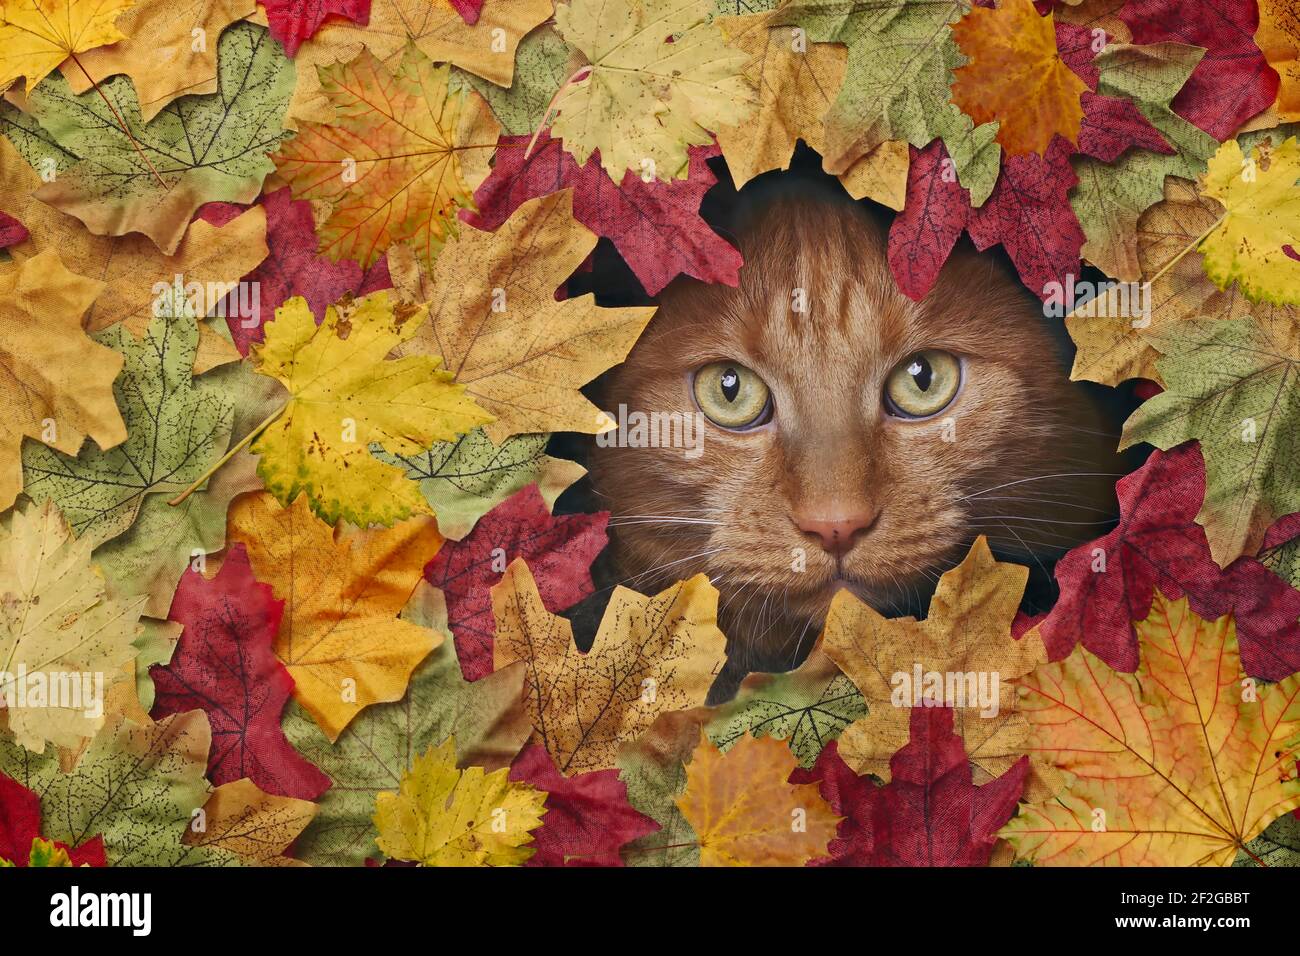 Lindo gato de jengibre mirando a través de un agujero en coloridas hojas de otoño. Foto de stock